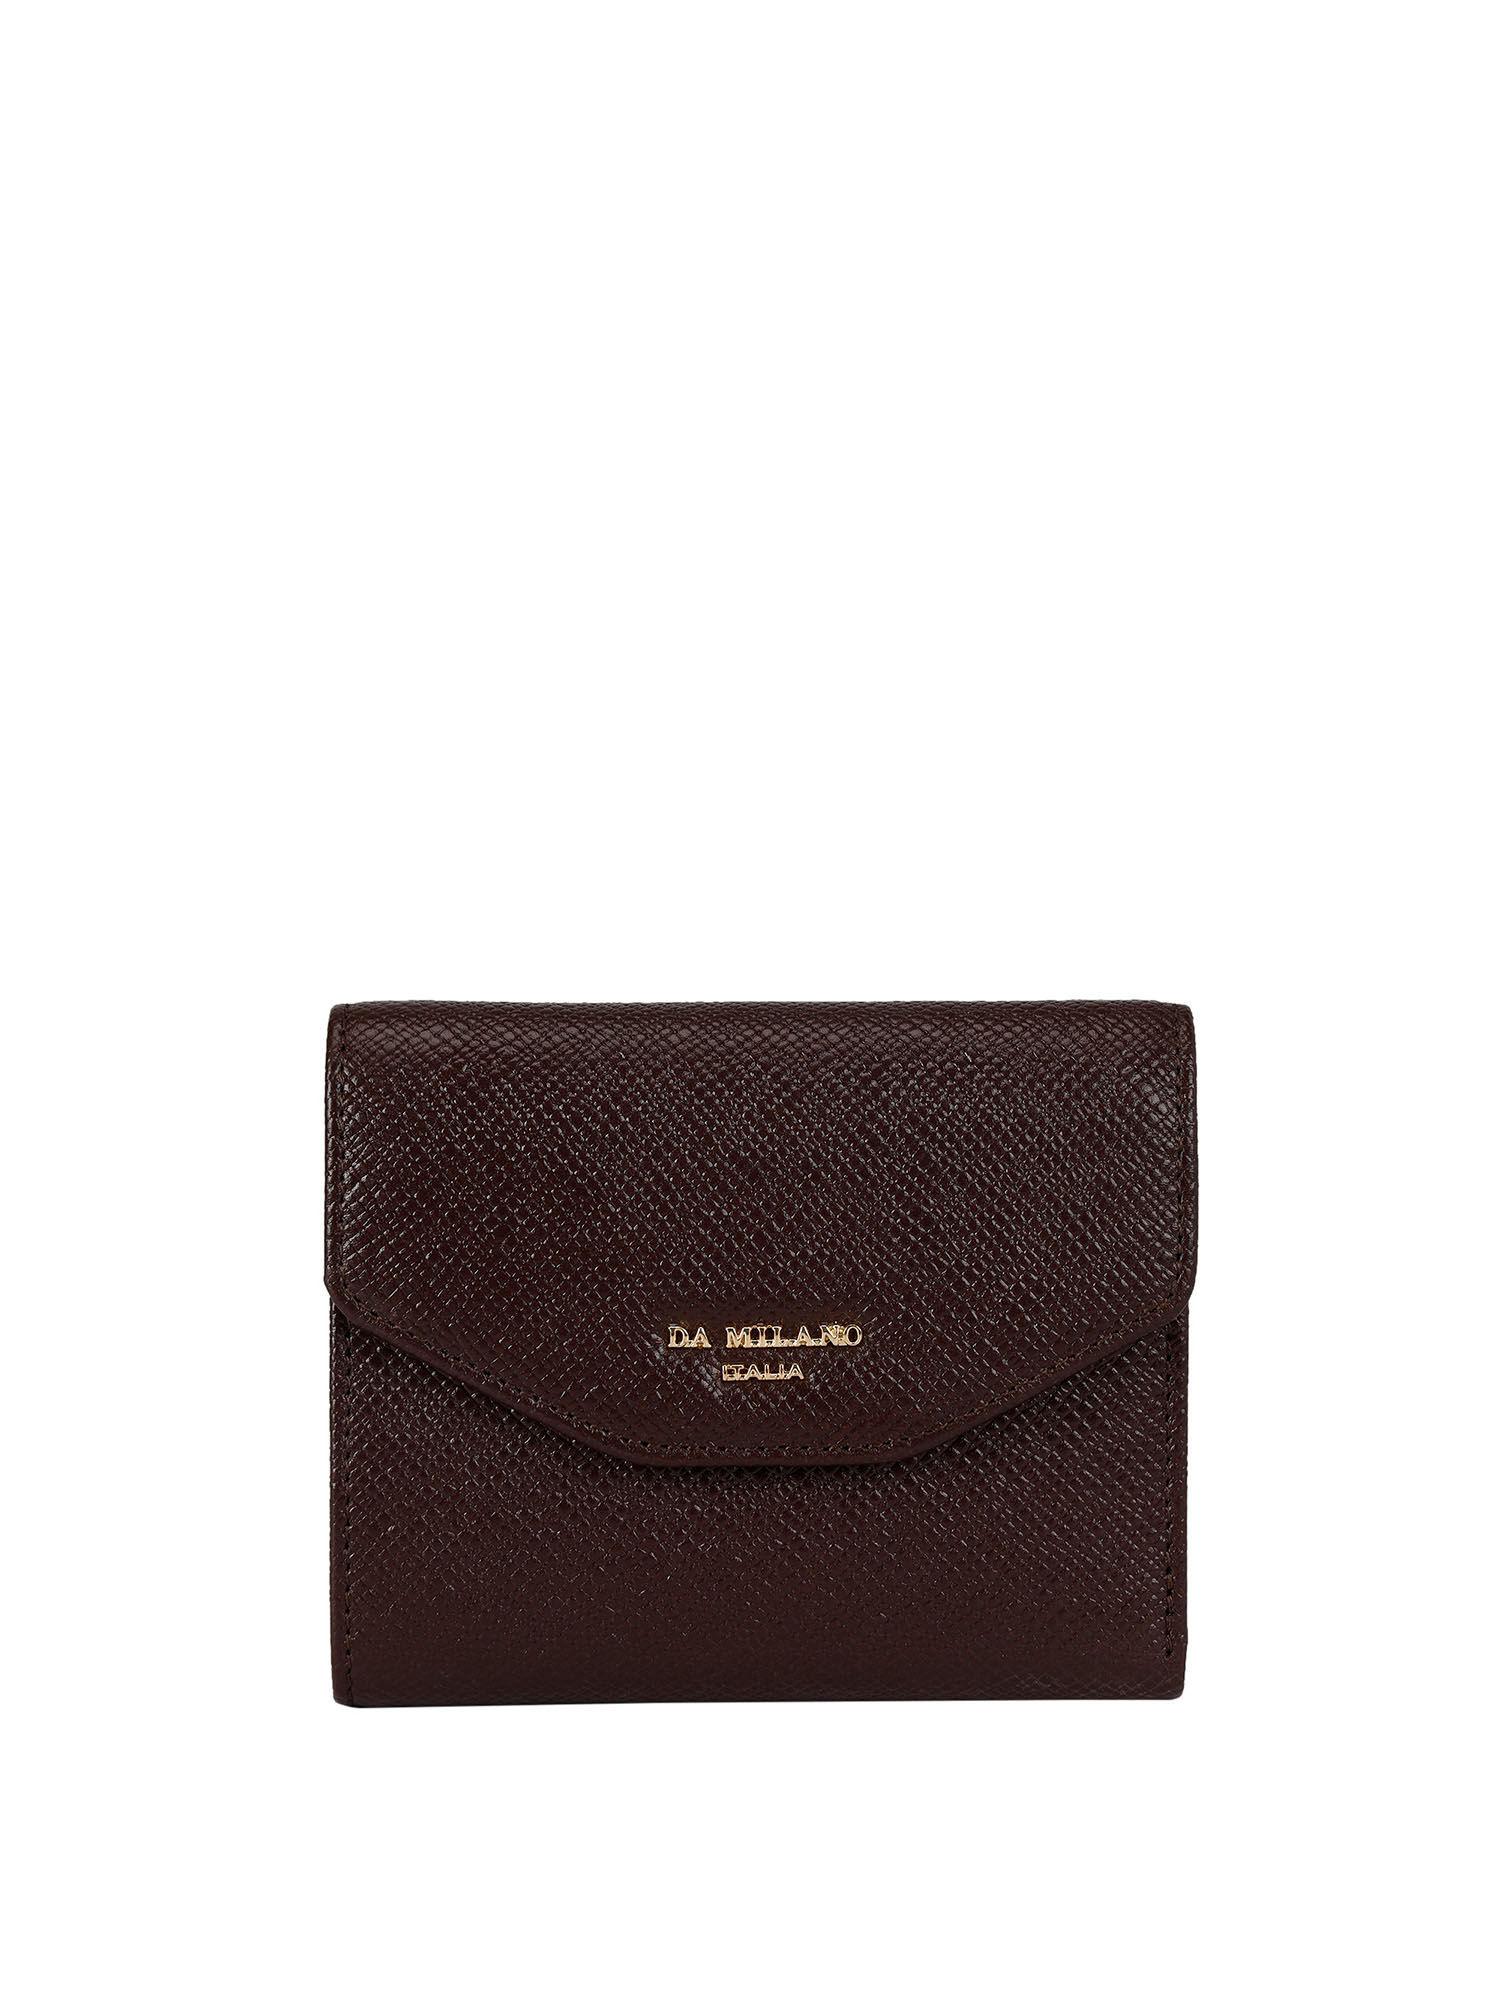 genuine leather brown ladies wallet